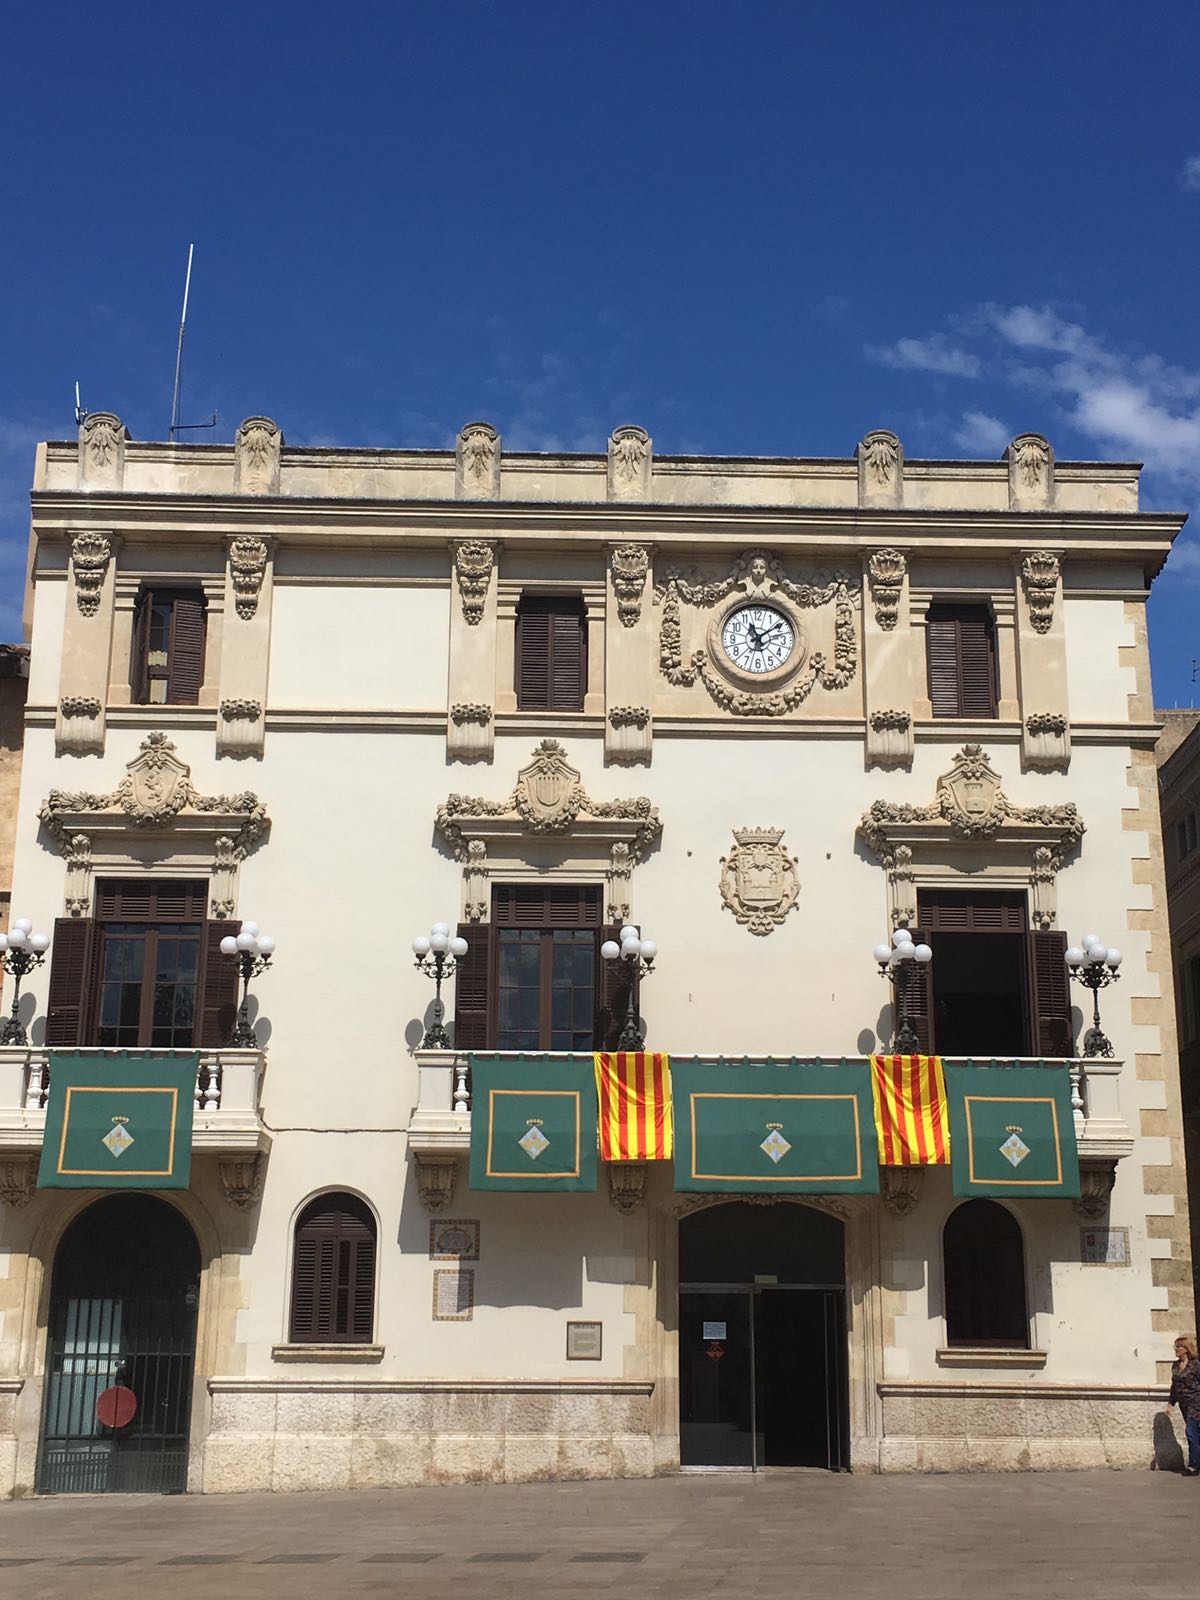 Vuelve a desaparecer la bandera española del Ayuntamiento de Vilafranca